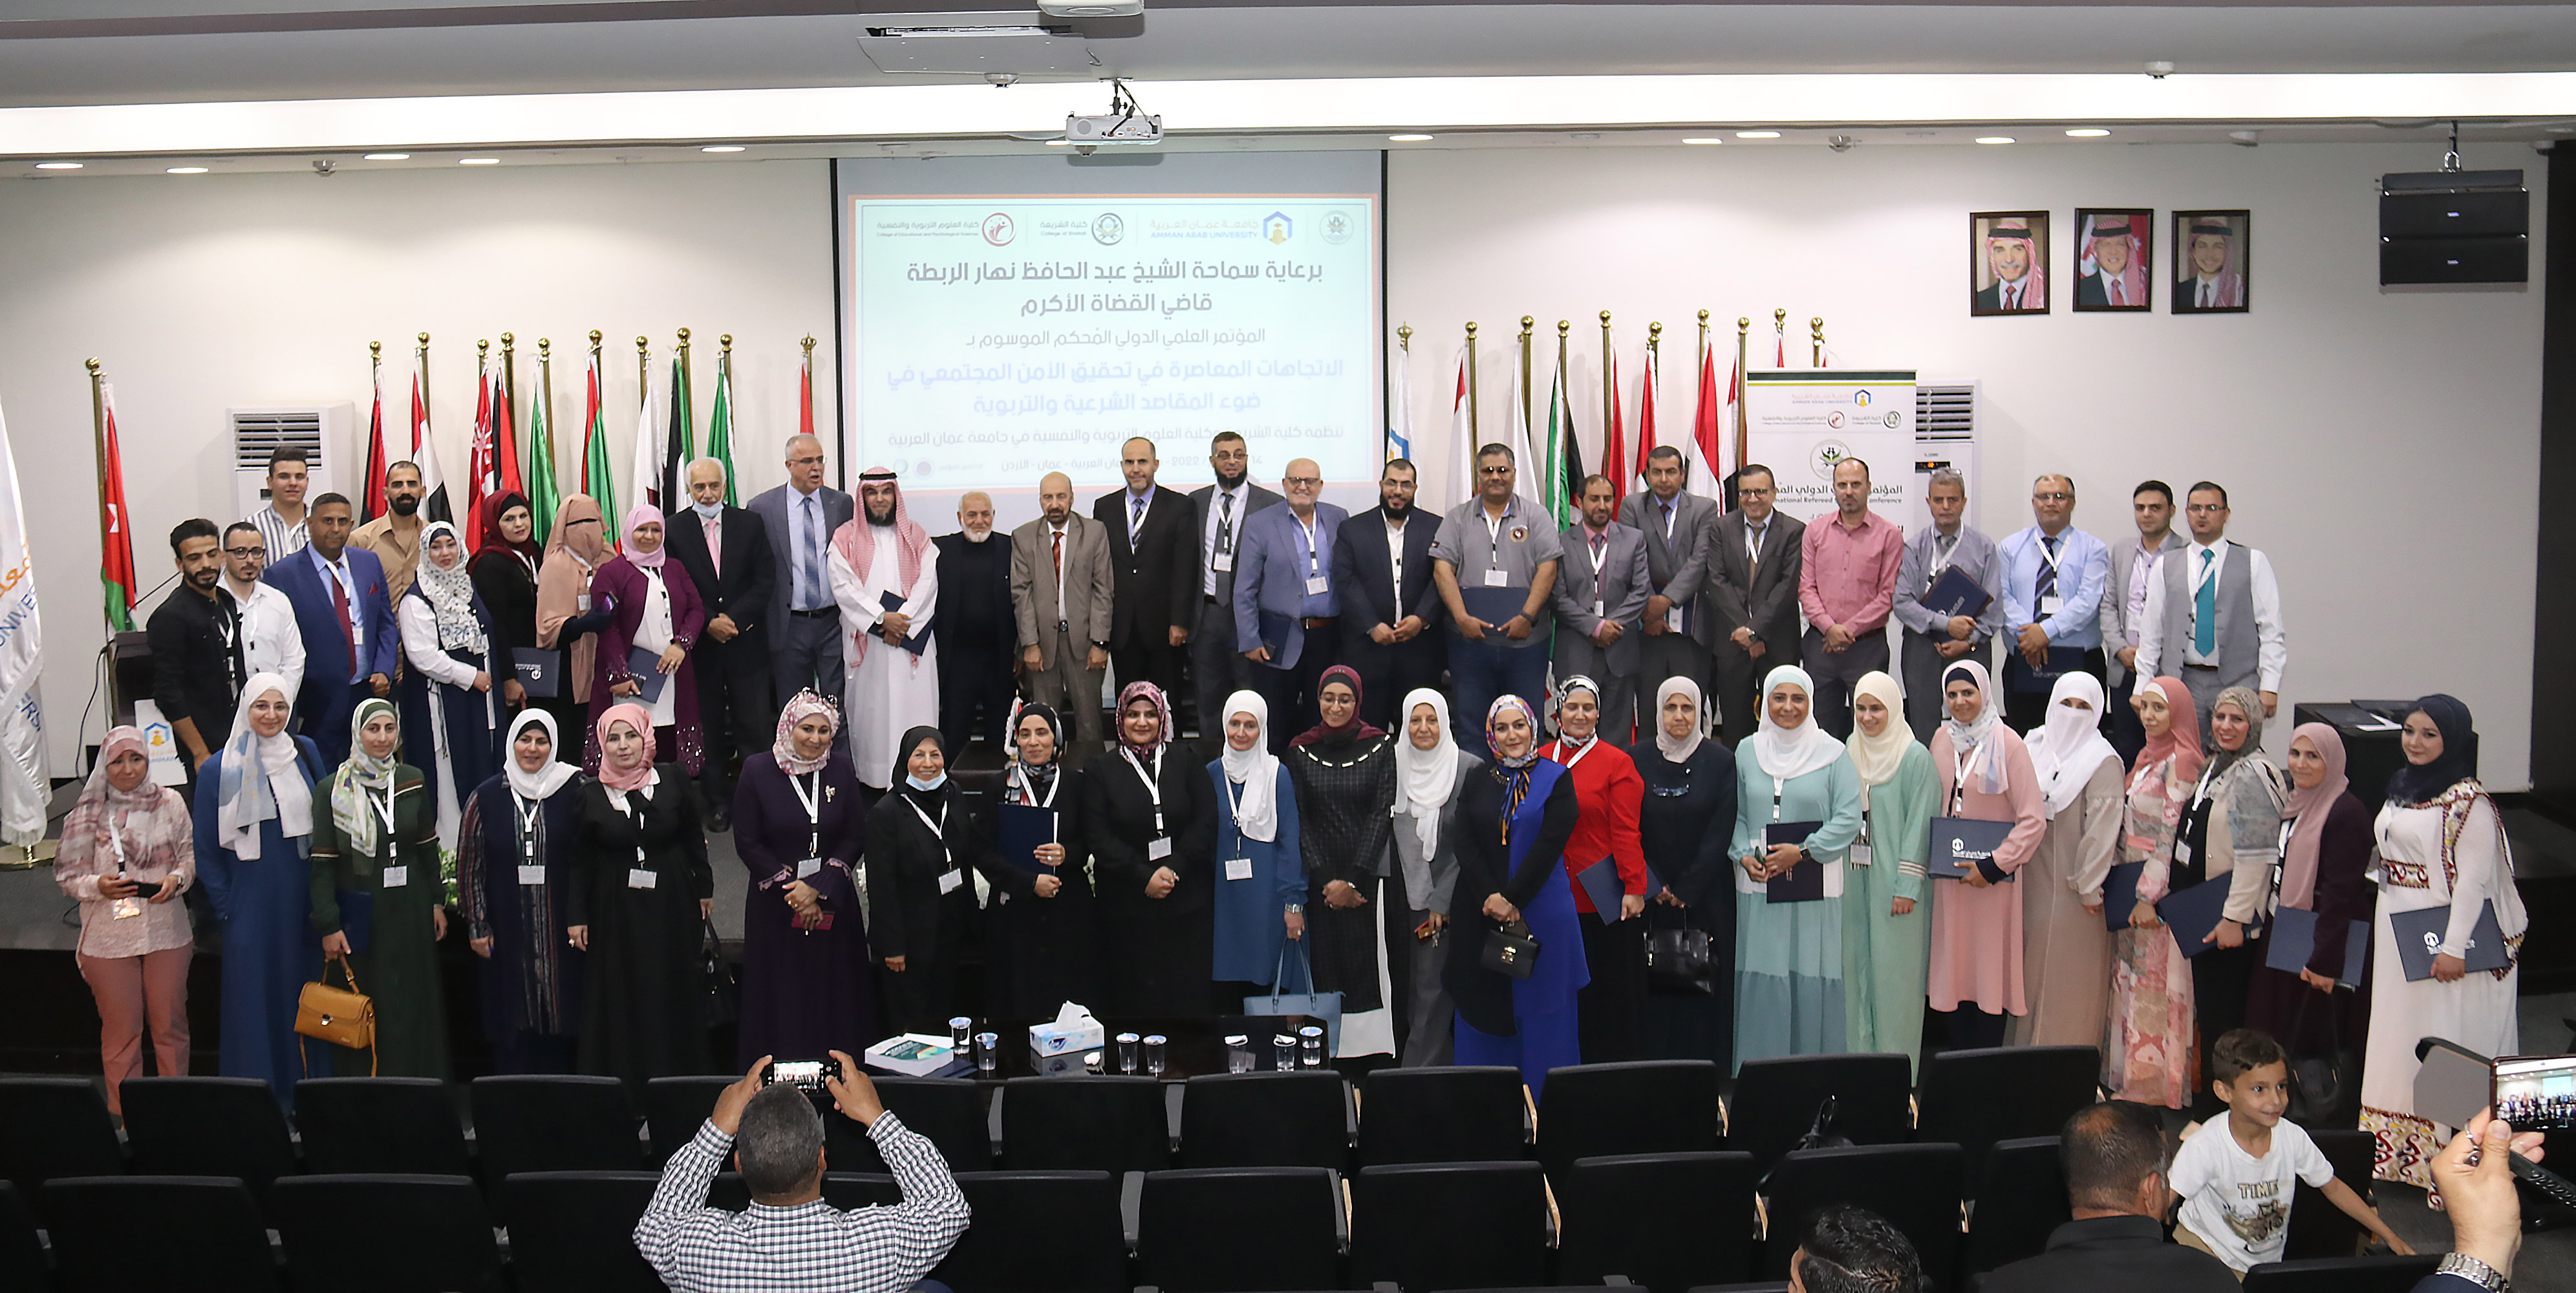 اختتام المؤتمر الدولي المحكم "الاتجاهات المعاصرة في تحقيق الأمن المجتمعي في ضوء المقاصد الشرعية والتربوية" في عمان العربية